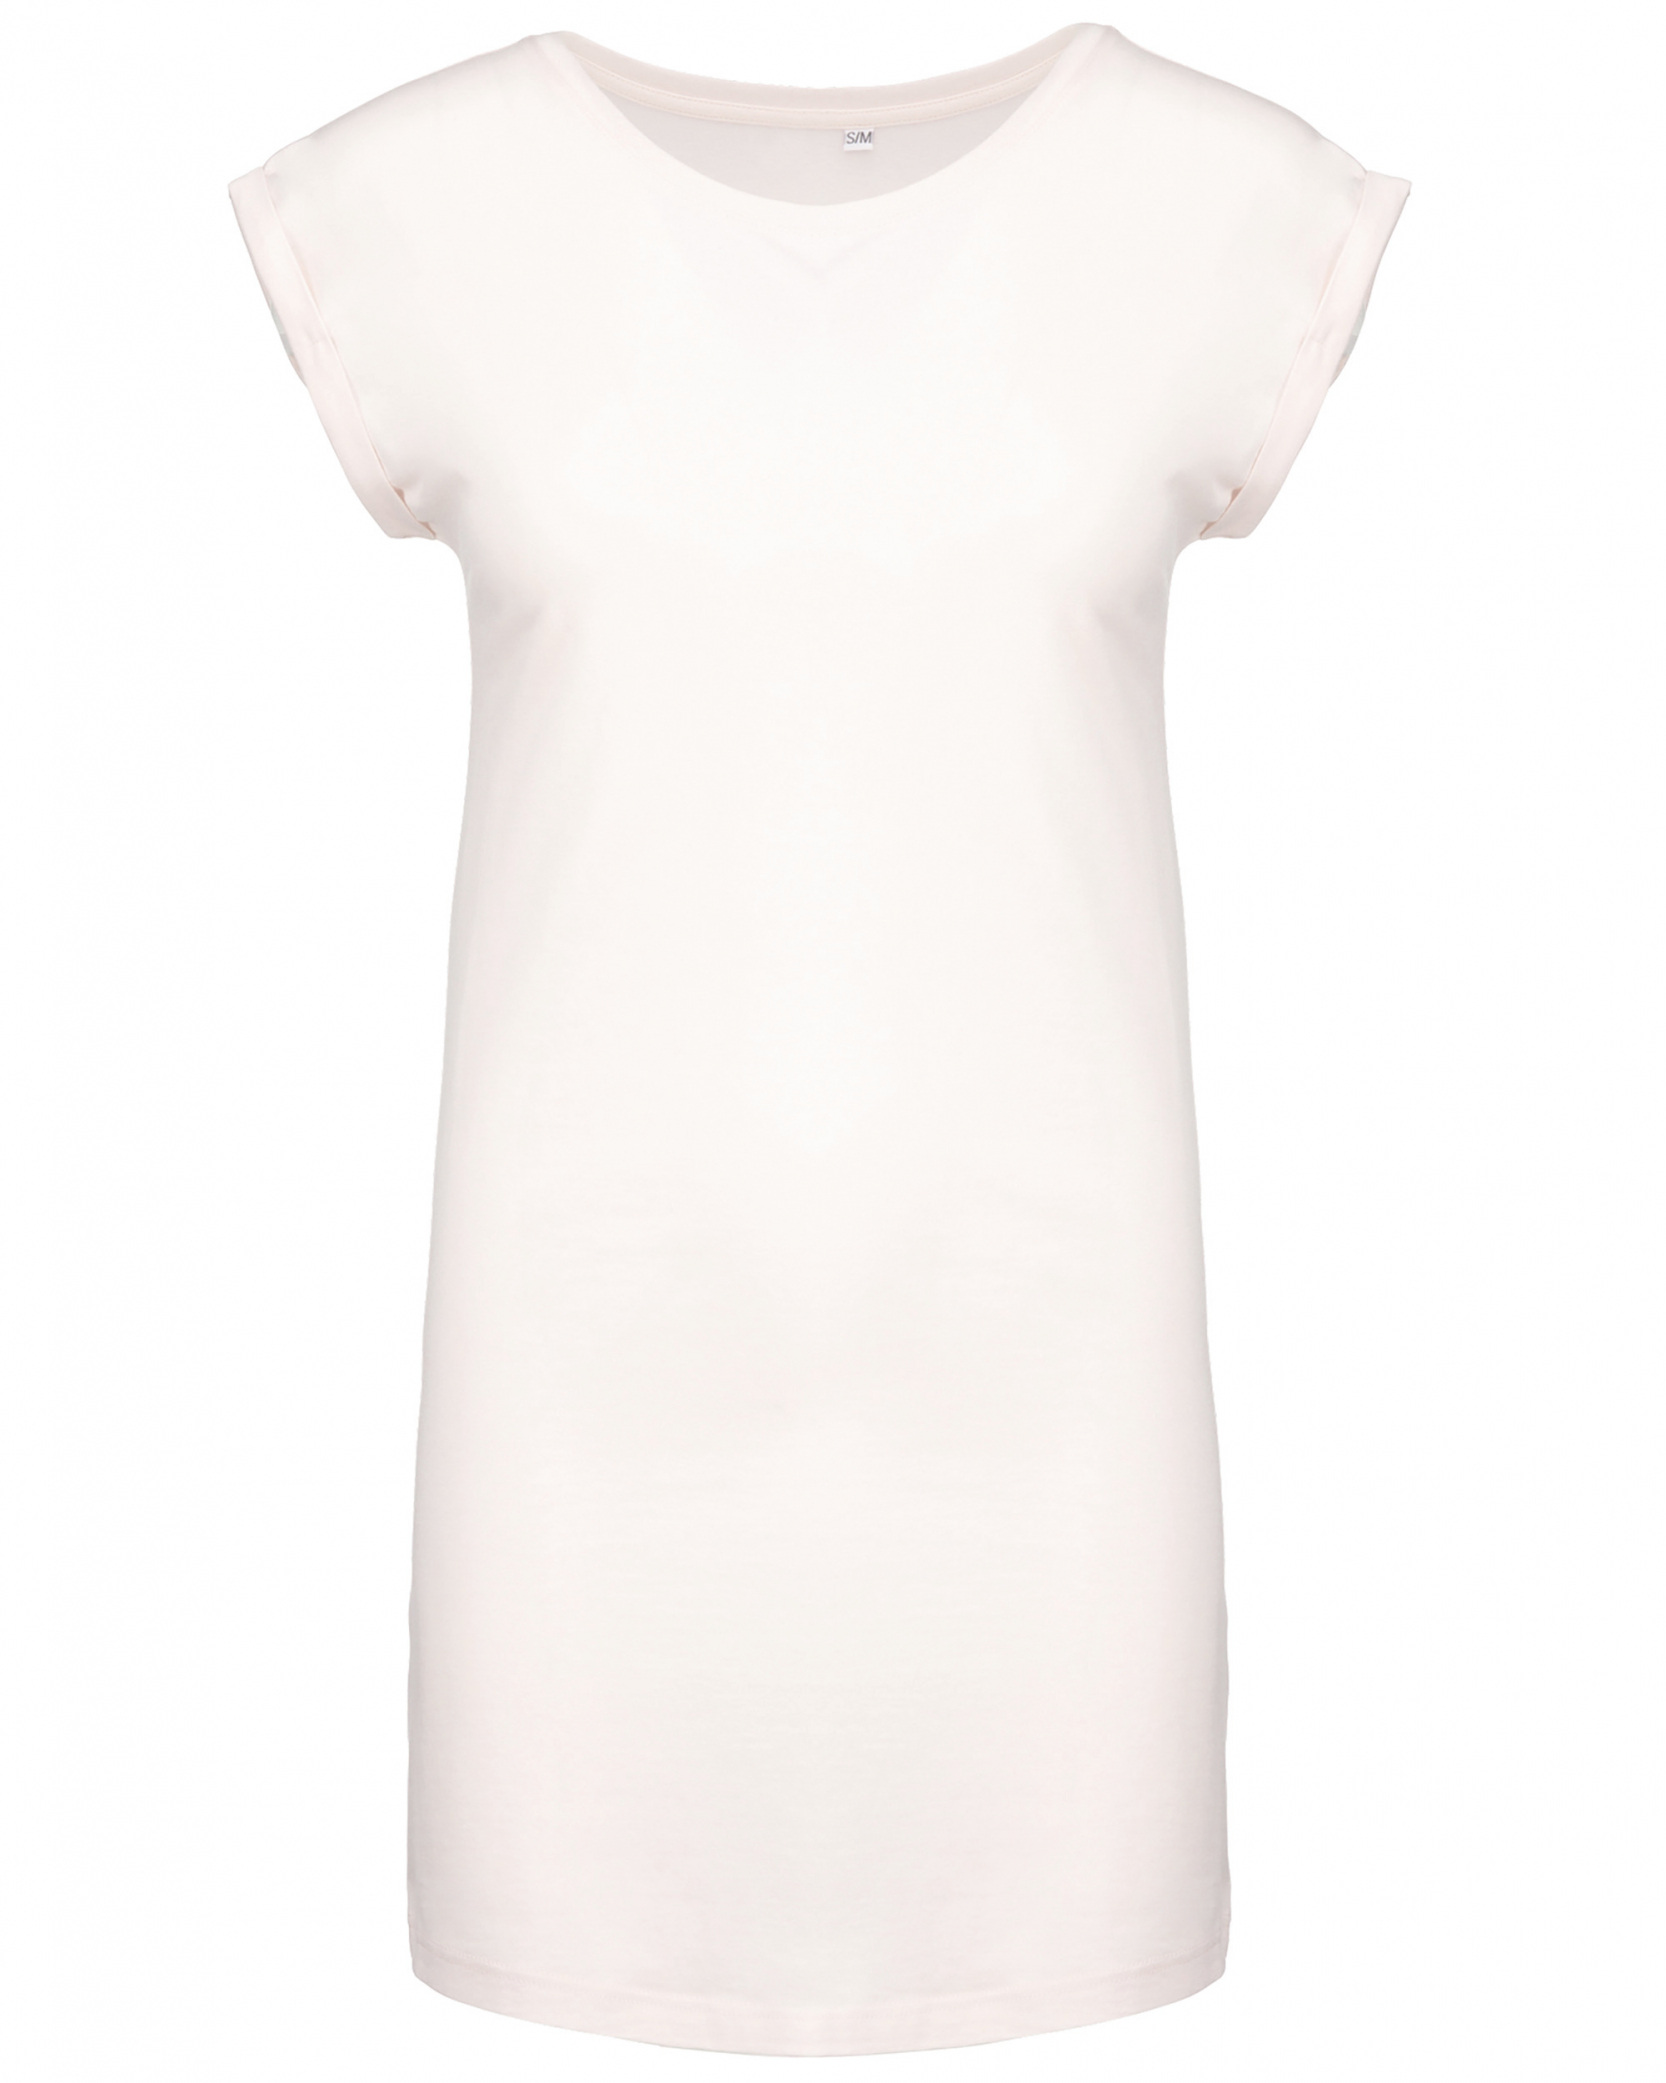 Dámské dlouhé tričko - šaty Barva: bílá, Velikost: L/XL